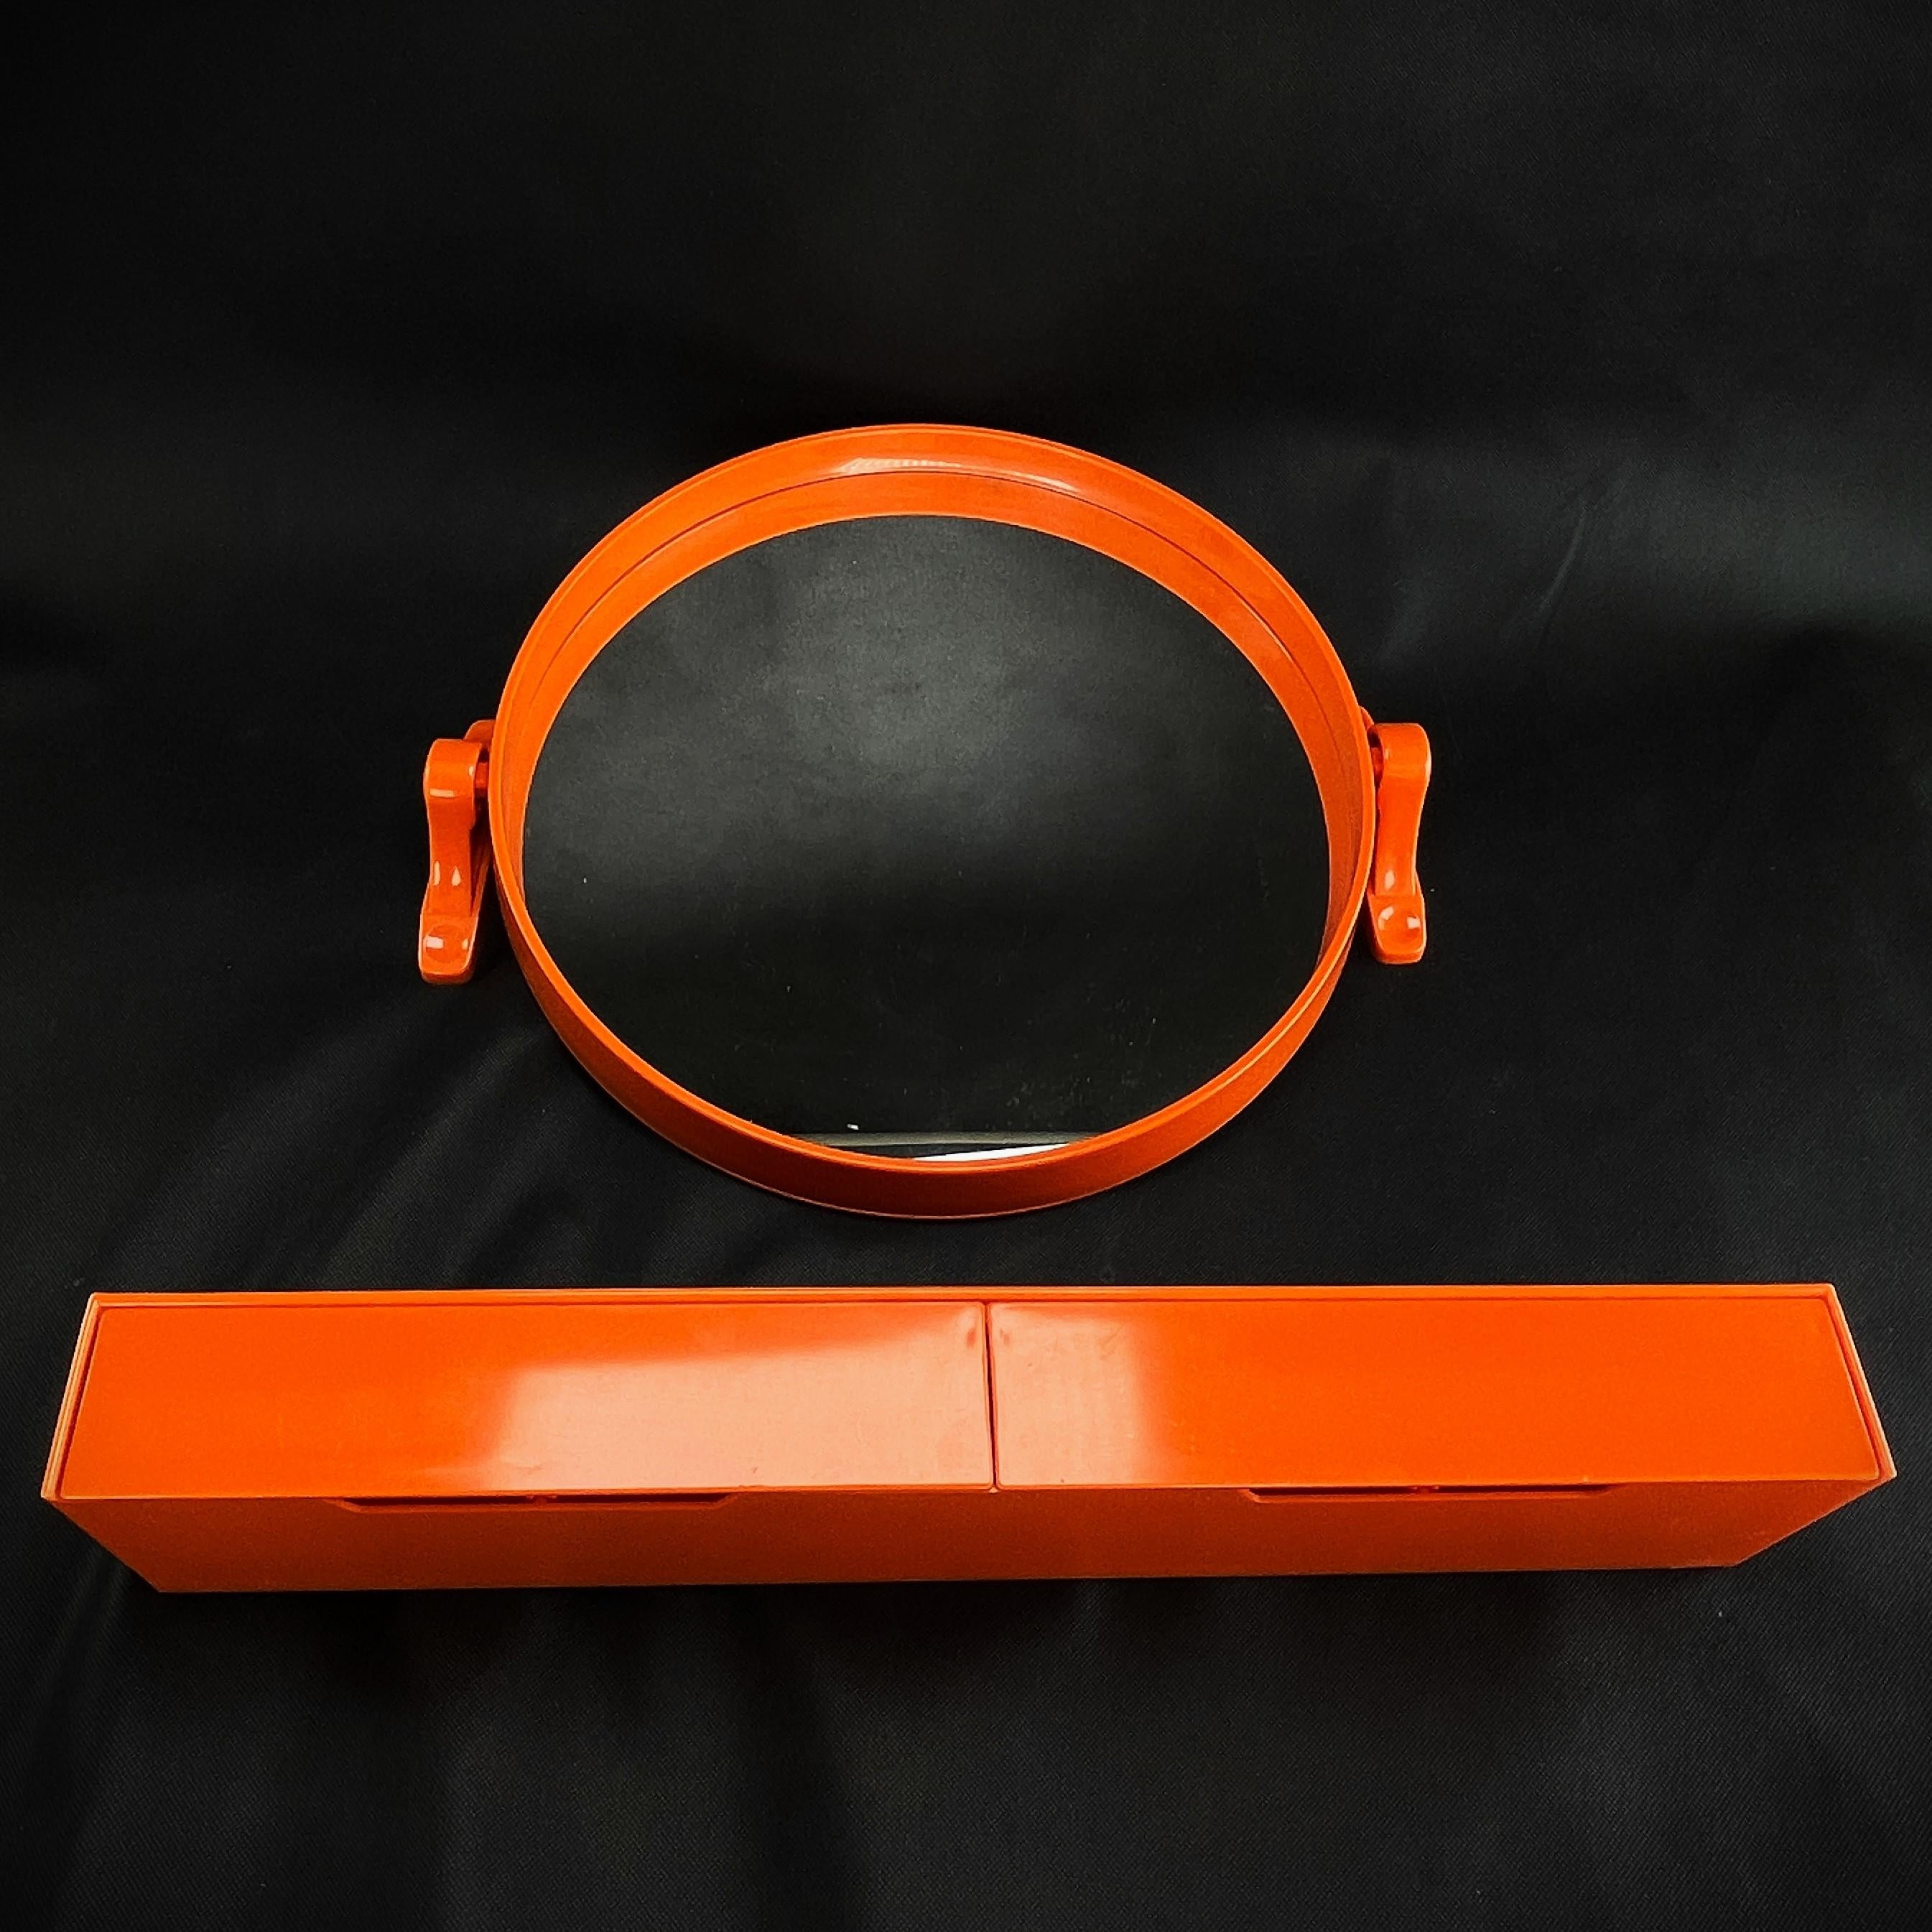 orange Wandspiegel mit Ablagebrett - 1970er Jahre

Dem Designer dieses außergewöhnlichen Objekts ist es gelungen, Funktionalität, Design, Stil und Ästhetik miteinander zu verbinden. Auch heute noch ist dieser Spiegel ein absoluter Blickfang.
Der